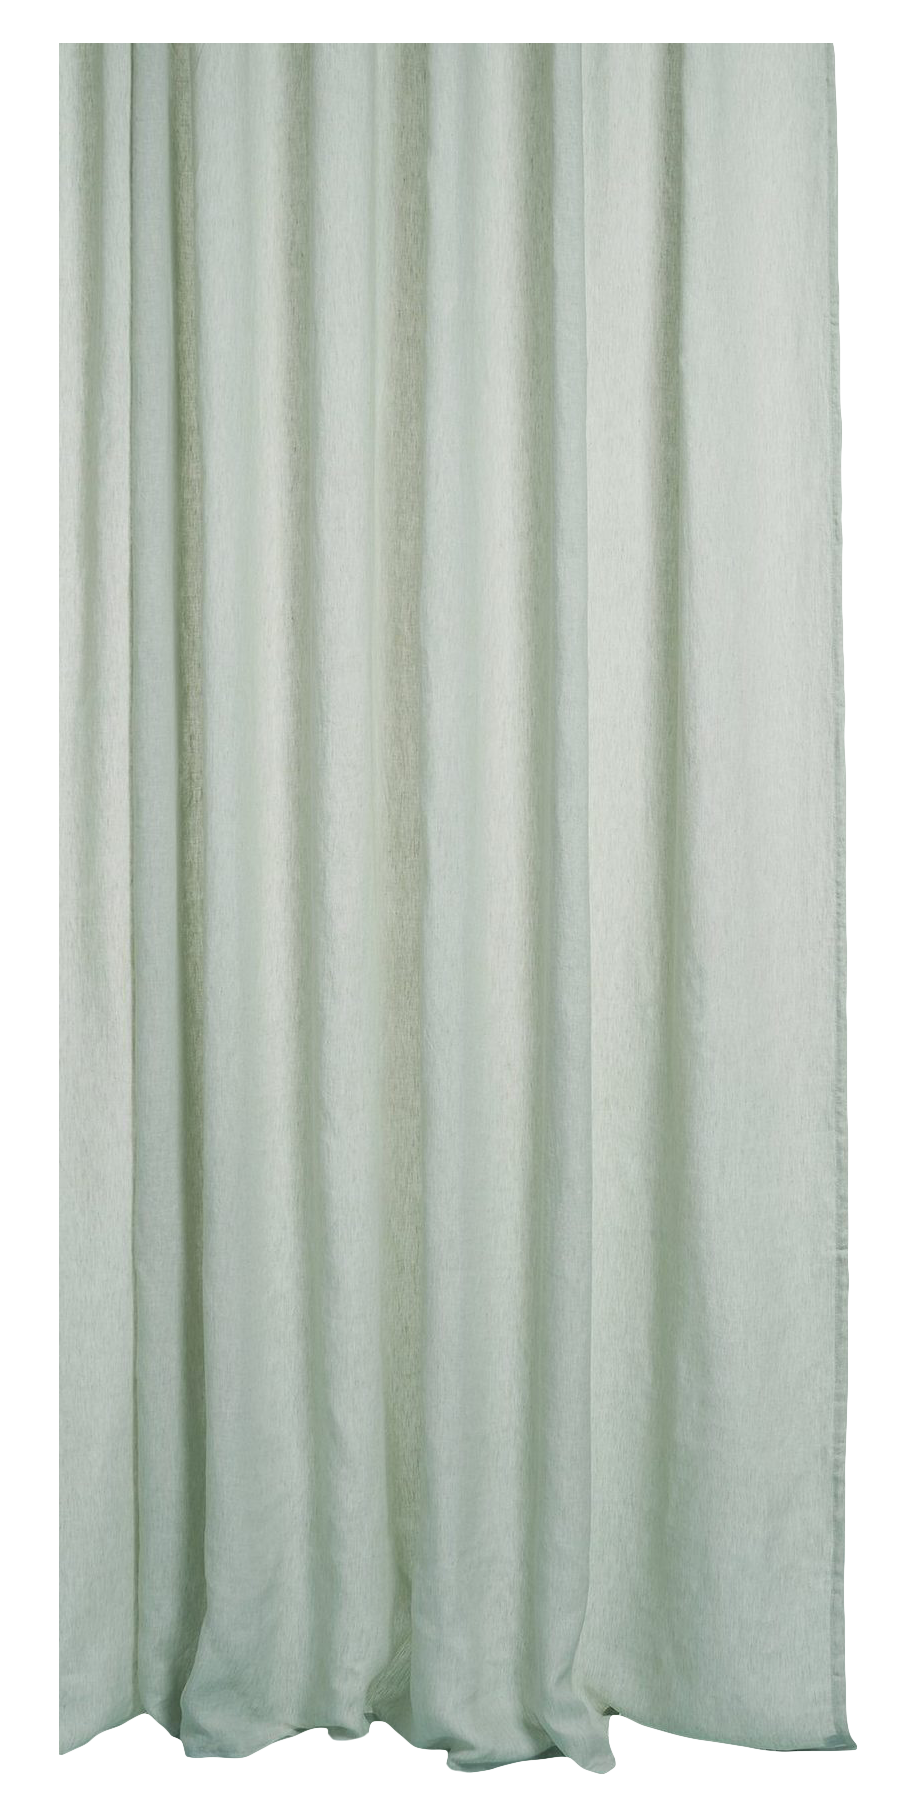 Two Tone Vorhang Stonewashed in Mint präsentiert im Onlineshop von KAQTU Design AG. Vorhang ist von ZigZagZurich